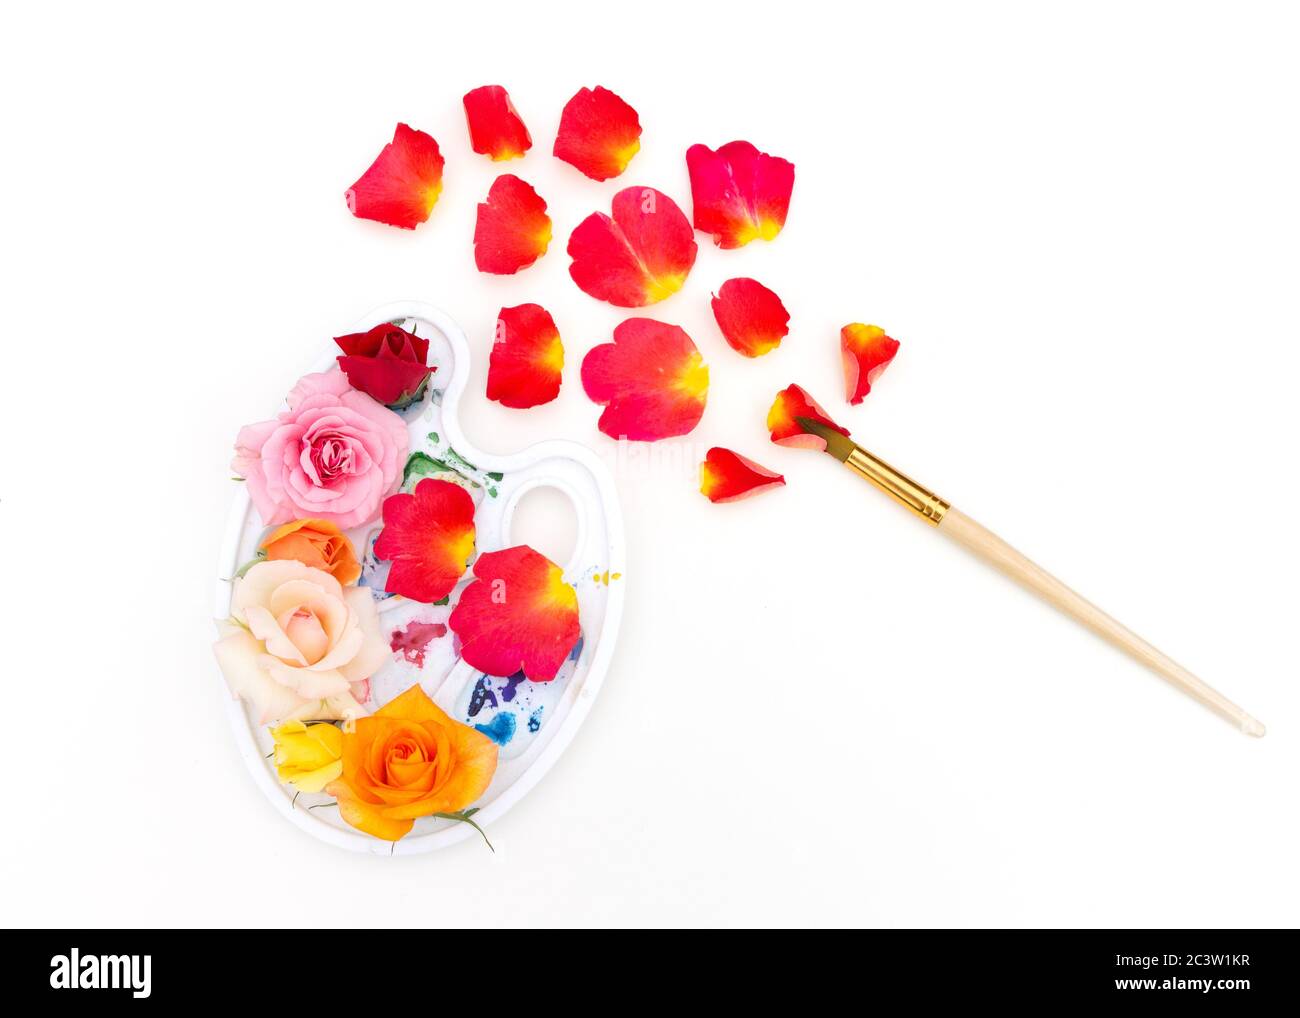 Tavolozza di colori acquerelli con boccioli di rosa multicolore e pennello artistico su sfondo bianco. I colori dell'estate. Concetto creativo di estate colorata. Foto Stock